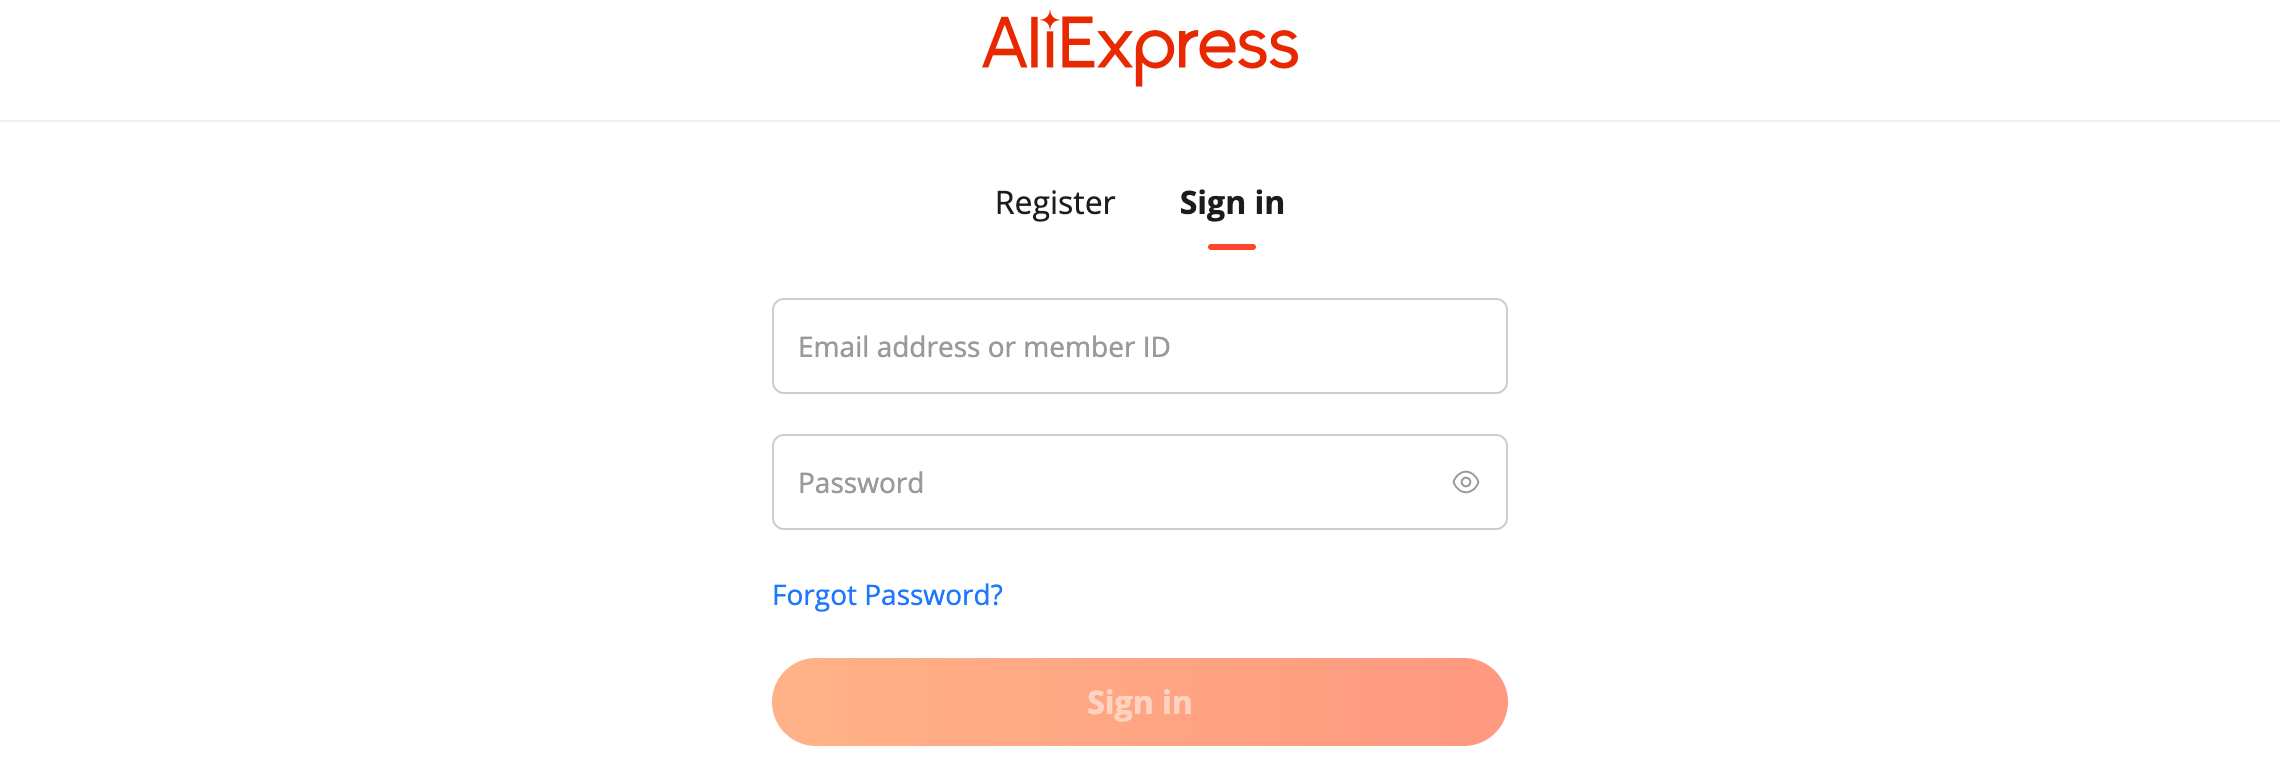 登录 AliExpress 账户